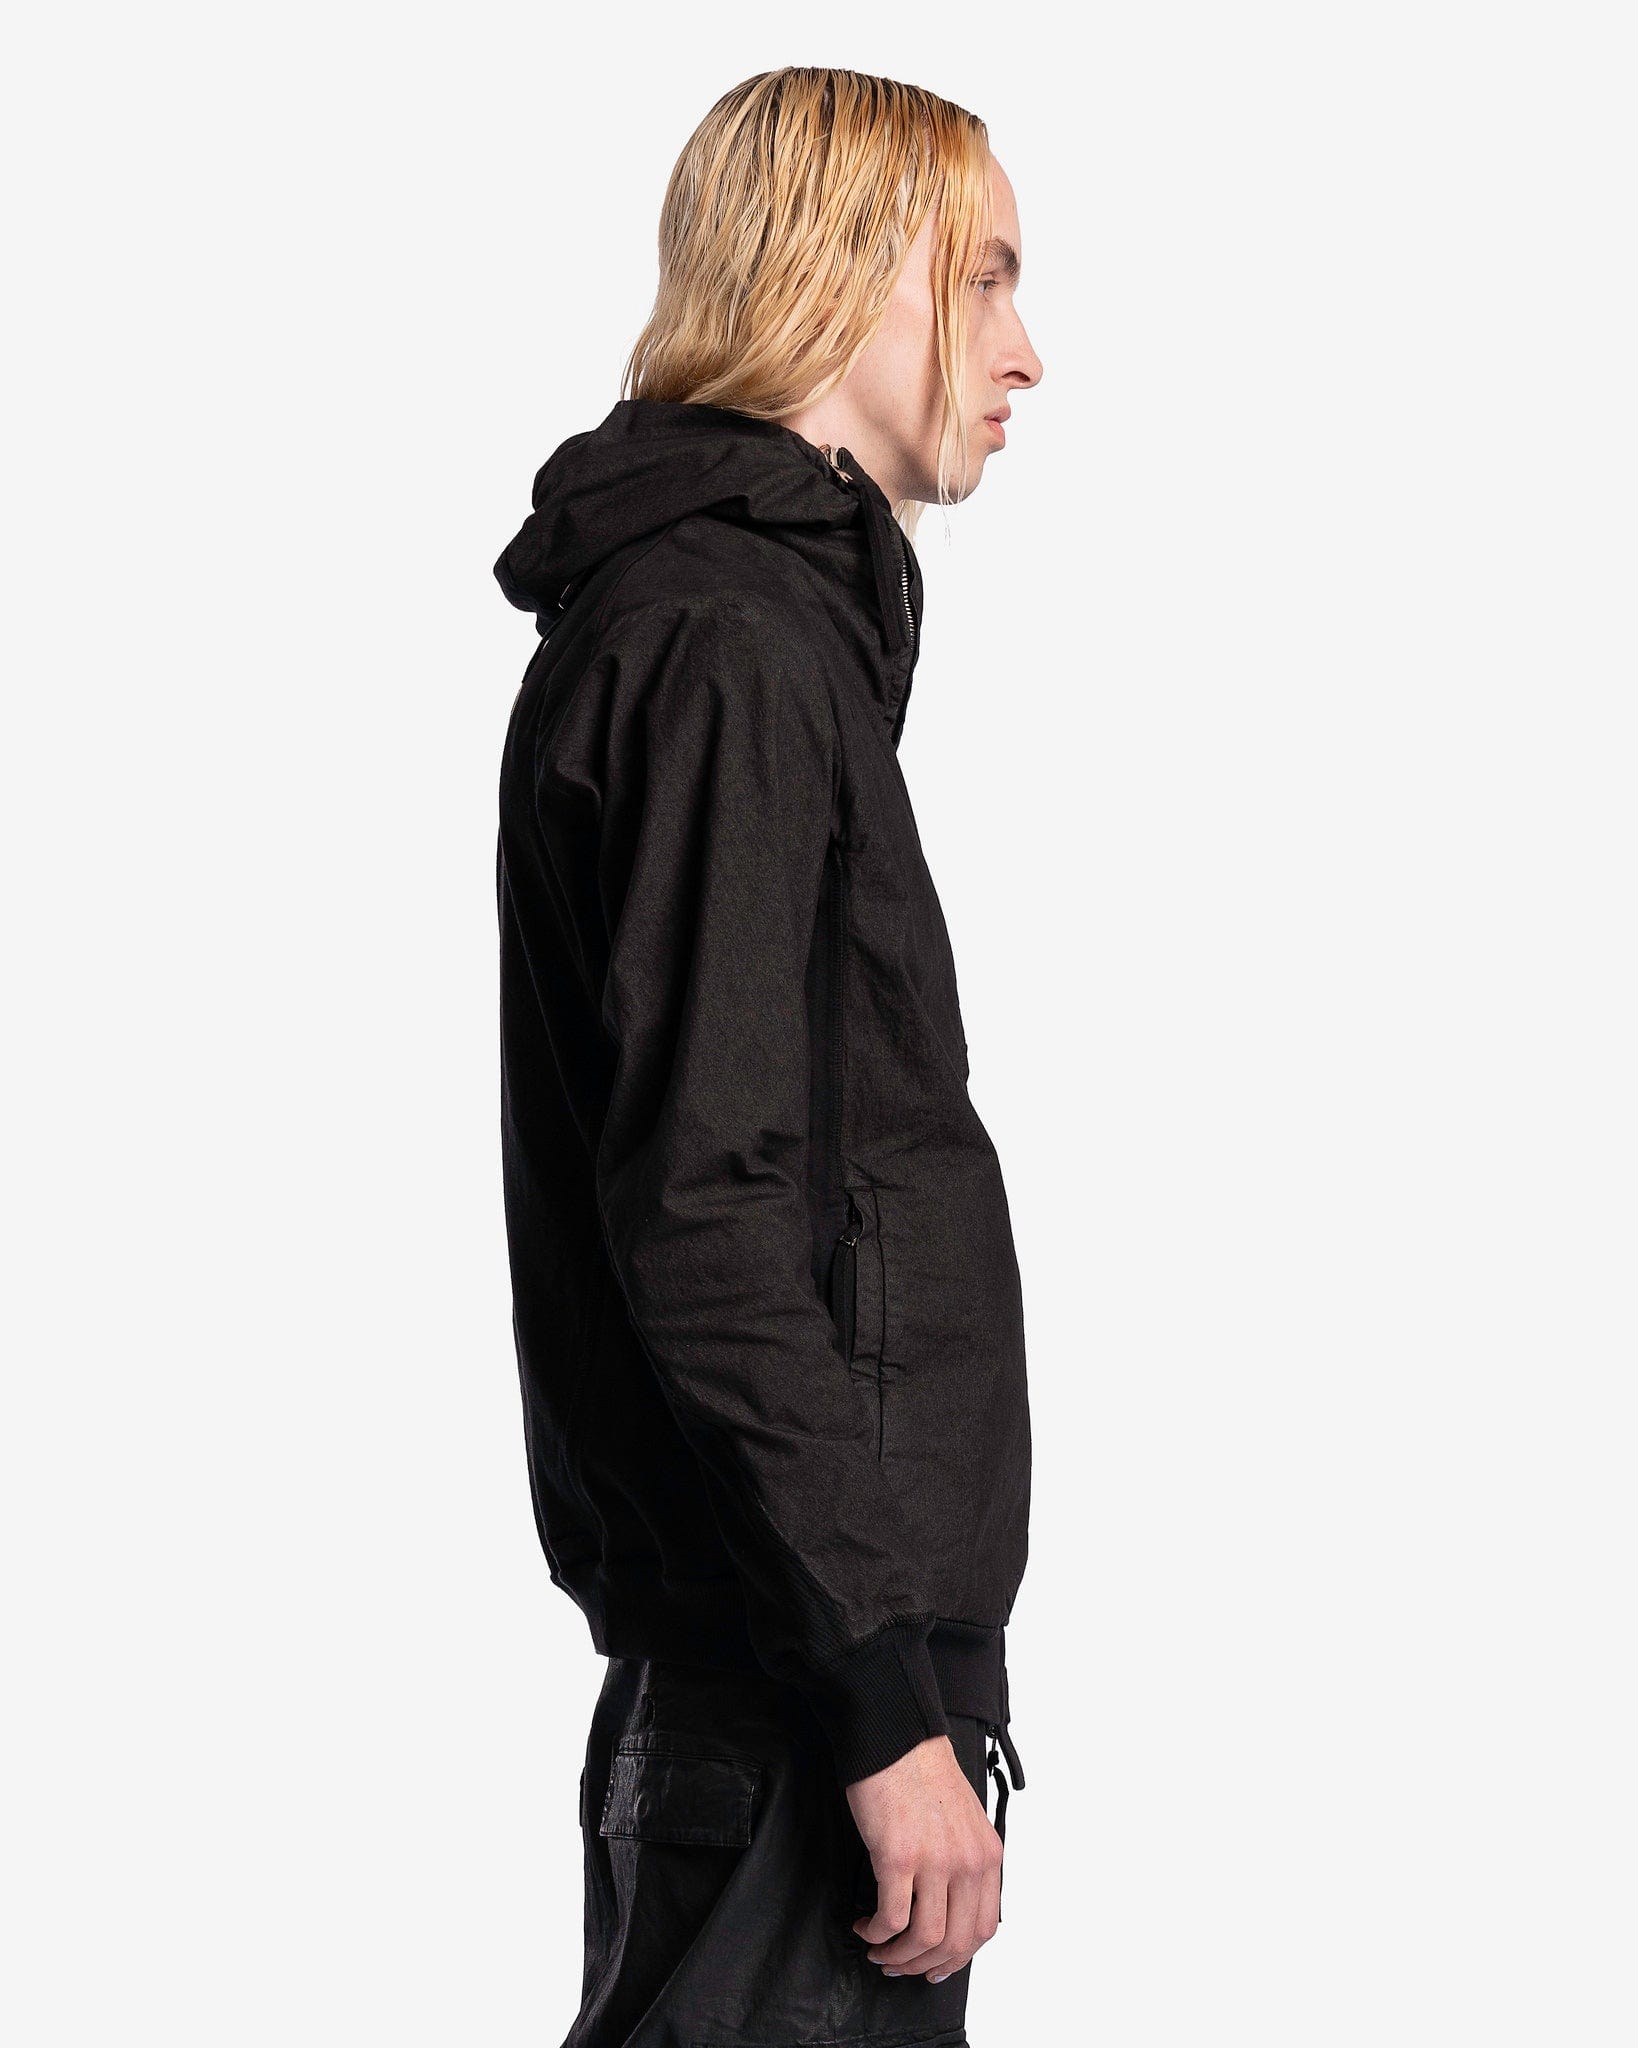 11 by Boris Bidjan Saberi Men's Jackets Hybrid Zipper 2.2 ST in Black Object Dye